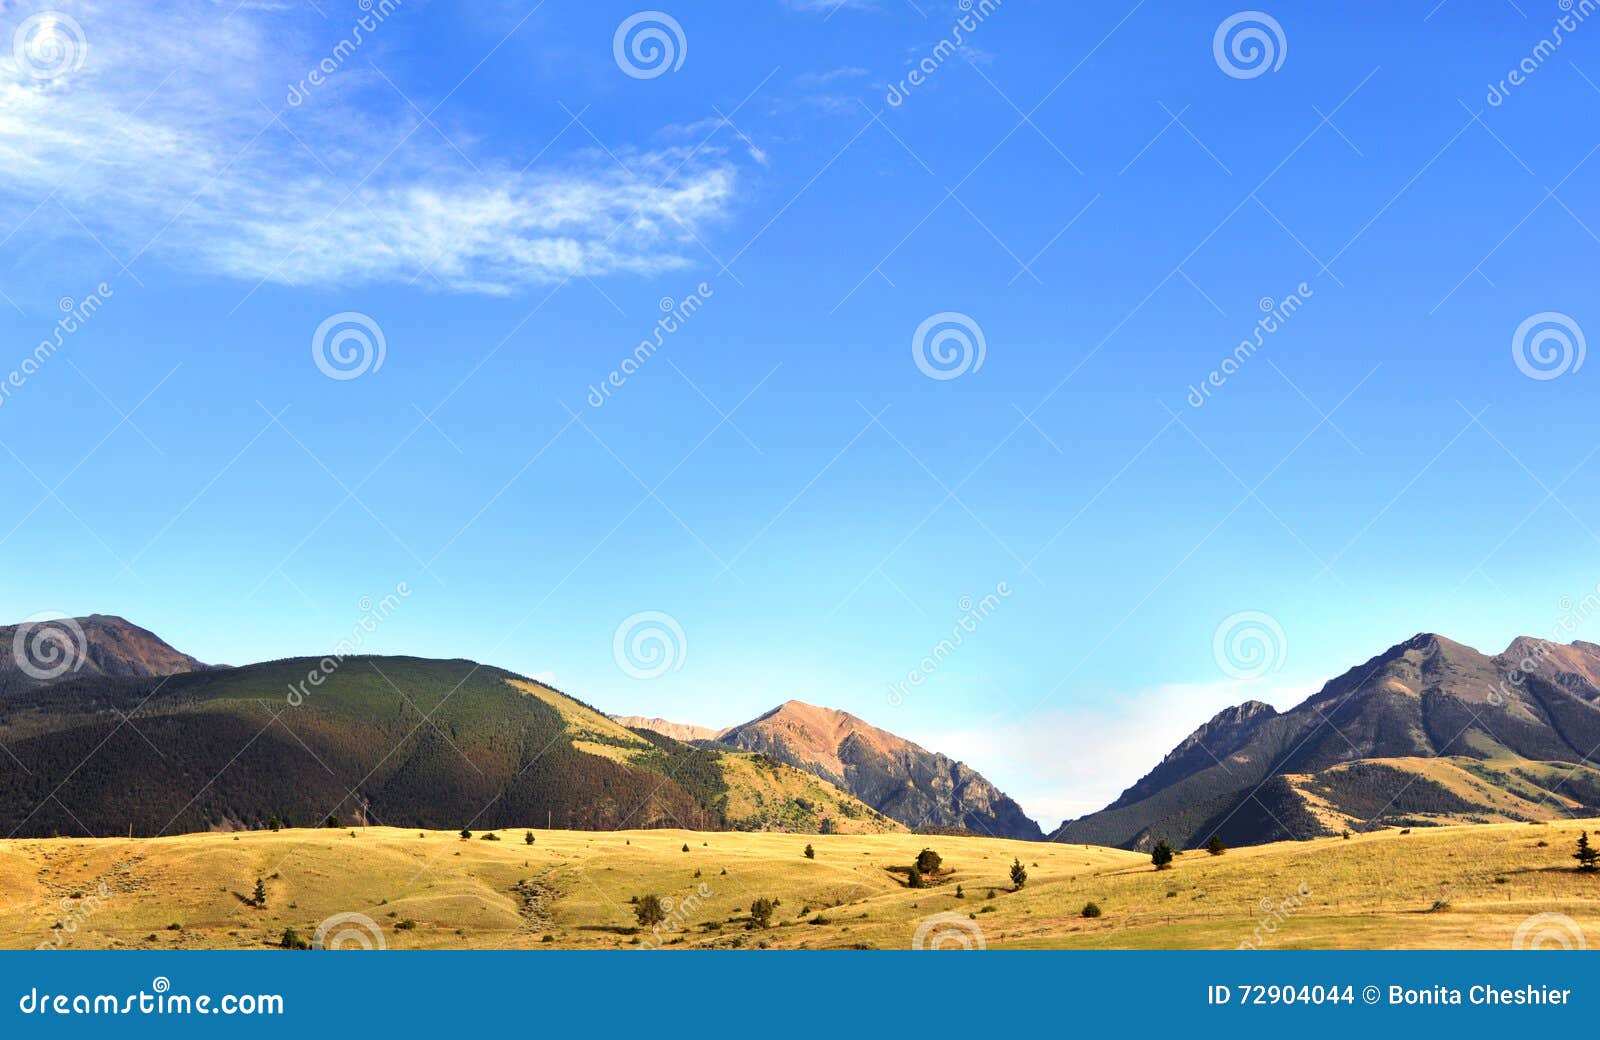 blue sky and absaroka mountains